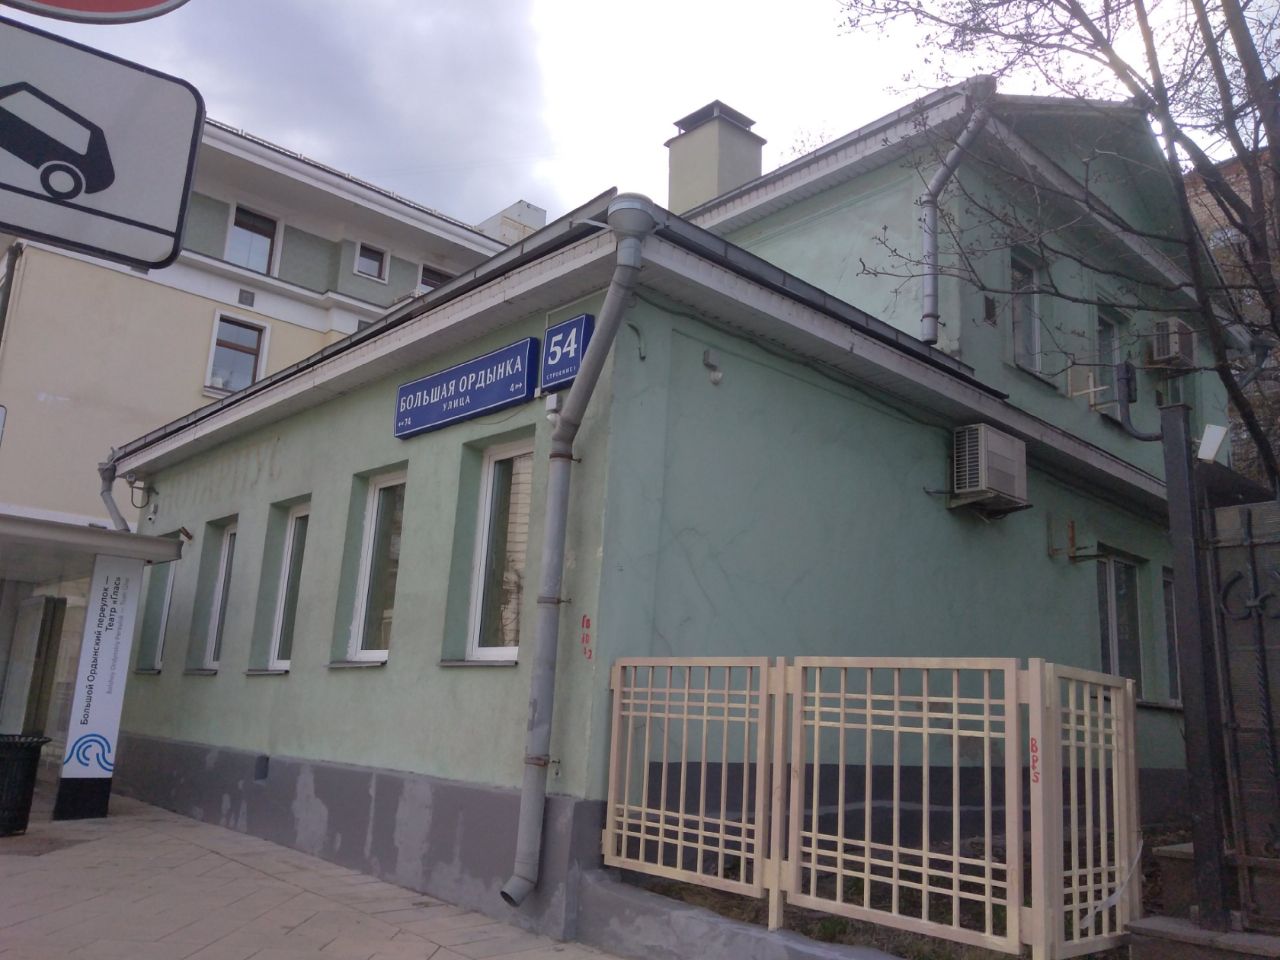 Бизнес Центр на ул. Большая Ордынка, 54с1